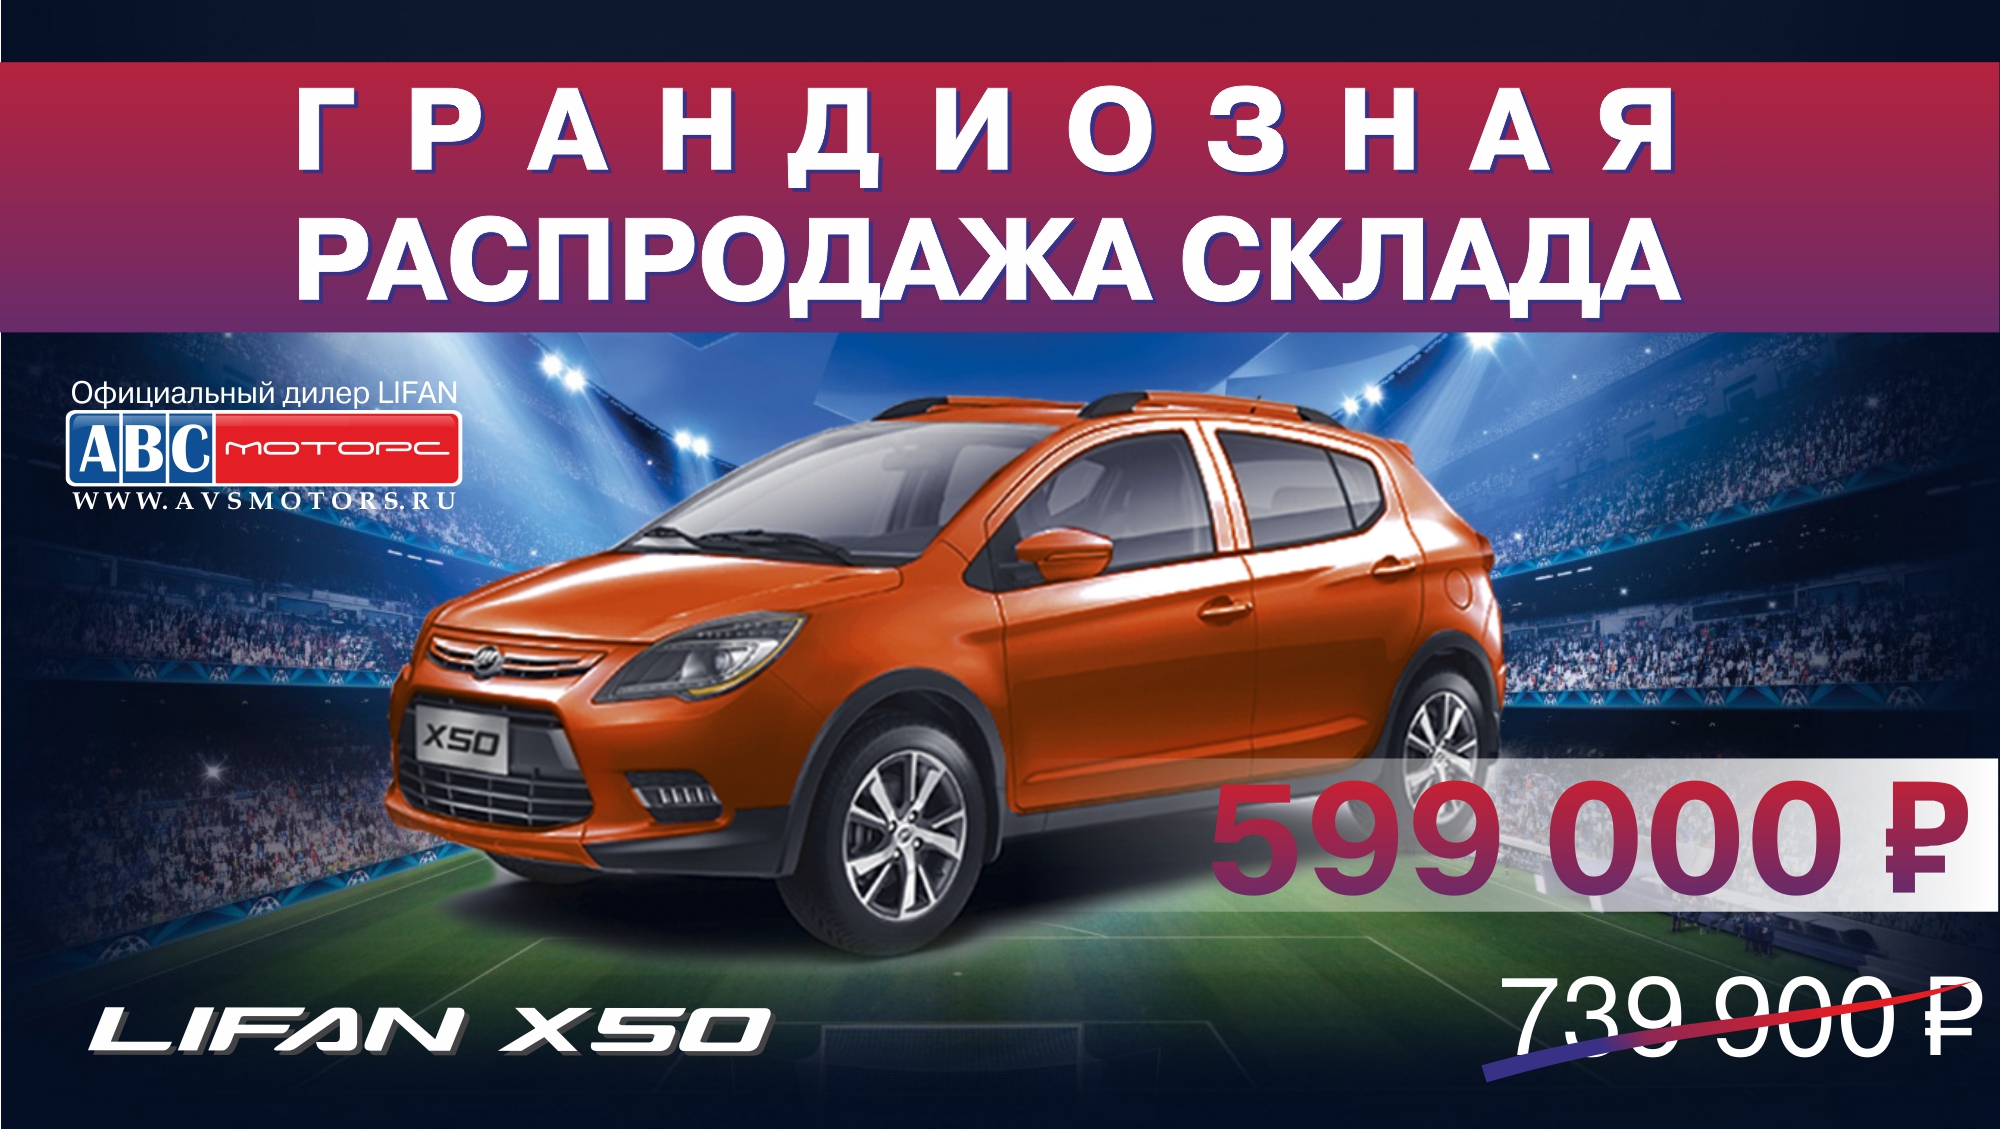 АВС-Моторс распродает склад, или как купить автомобиль за 316 рублей в день?